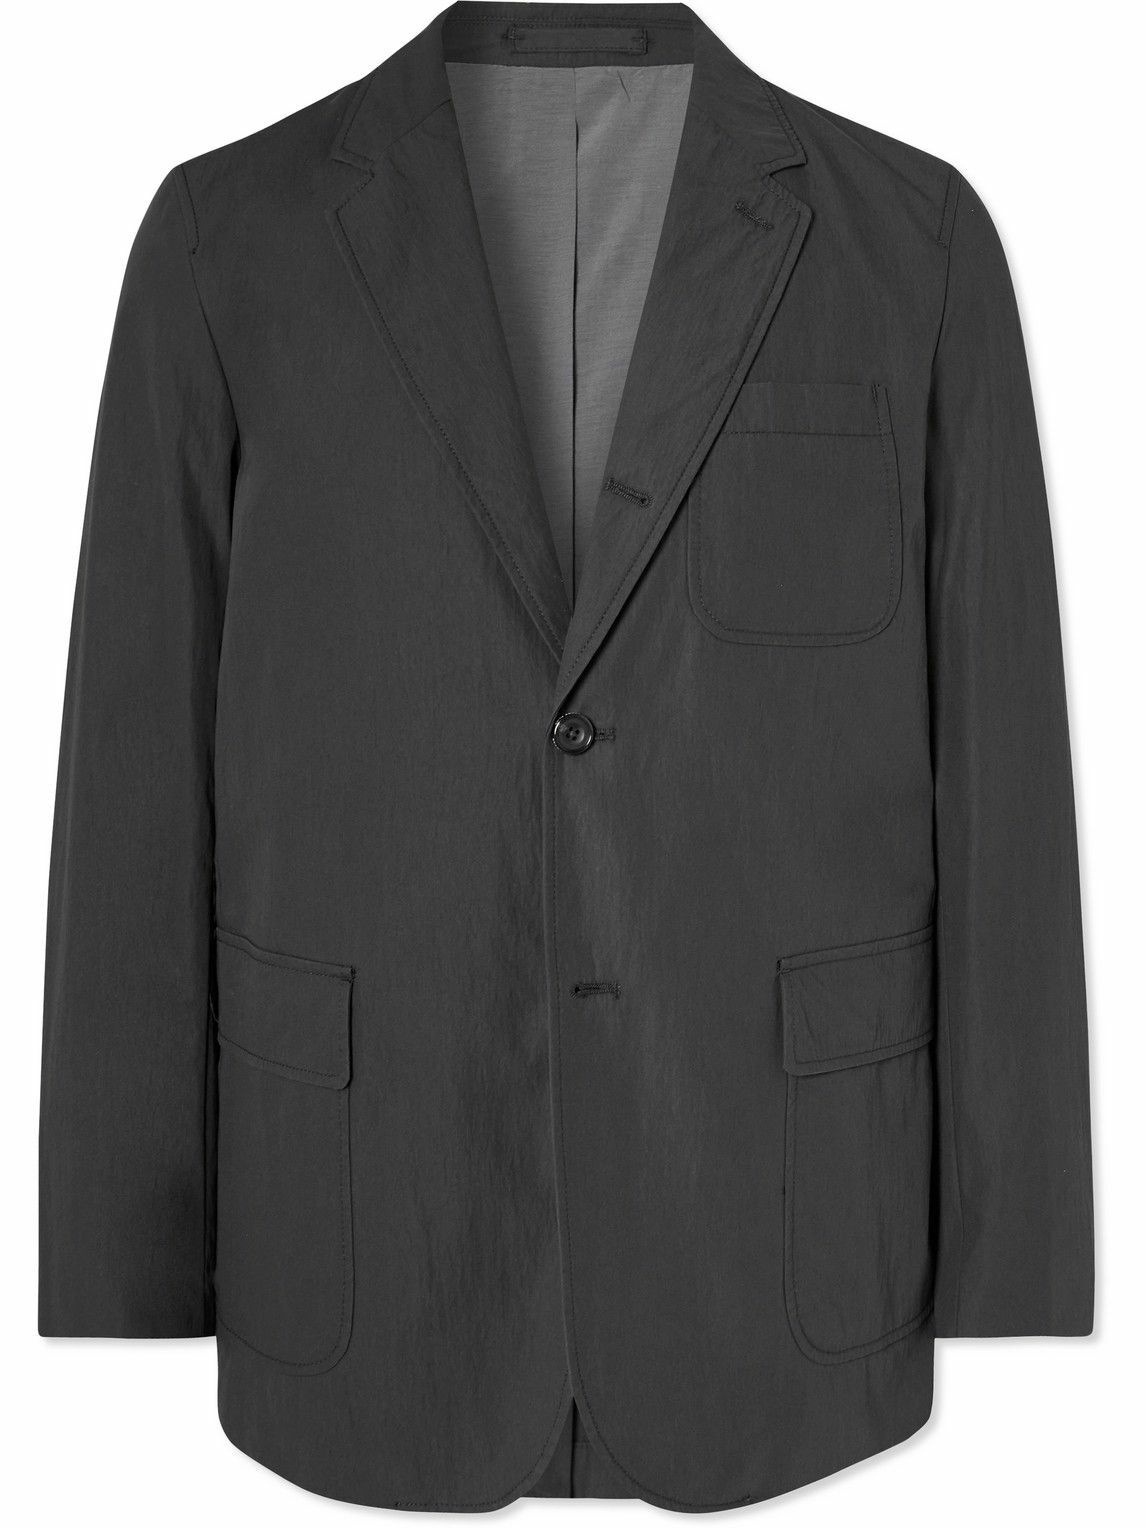 Beams Plus - 3B Cotton-Blend Suit Jacket - Black Beams Plus